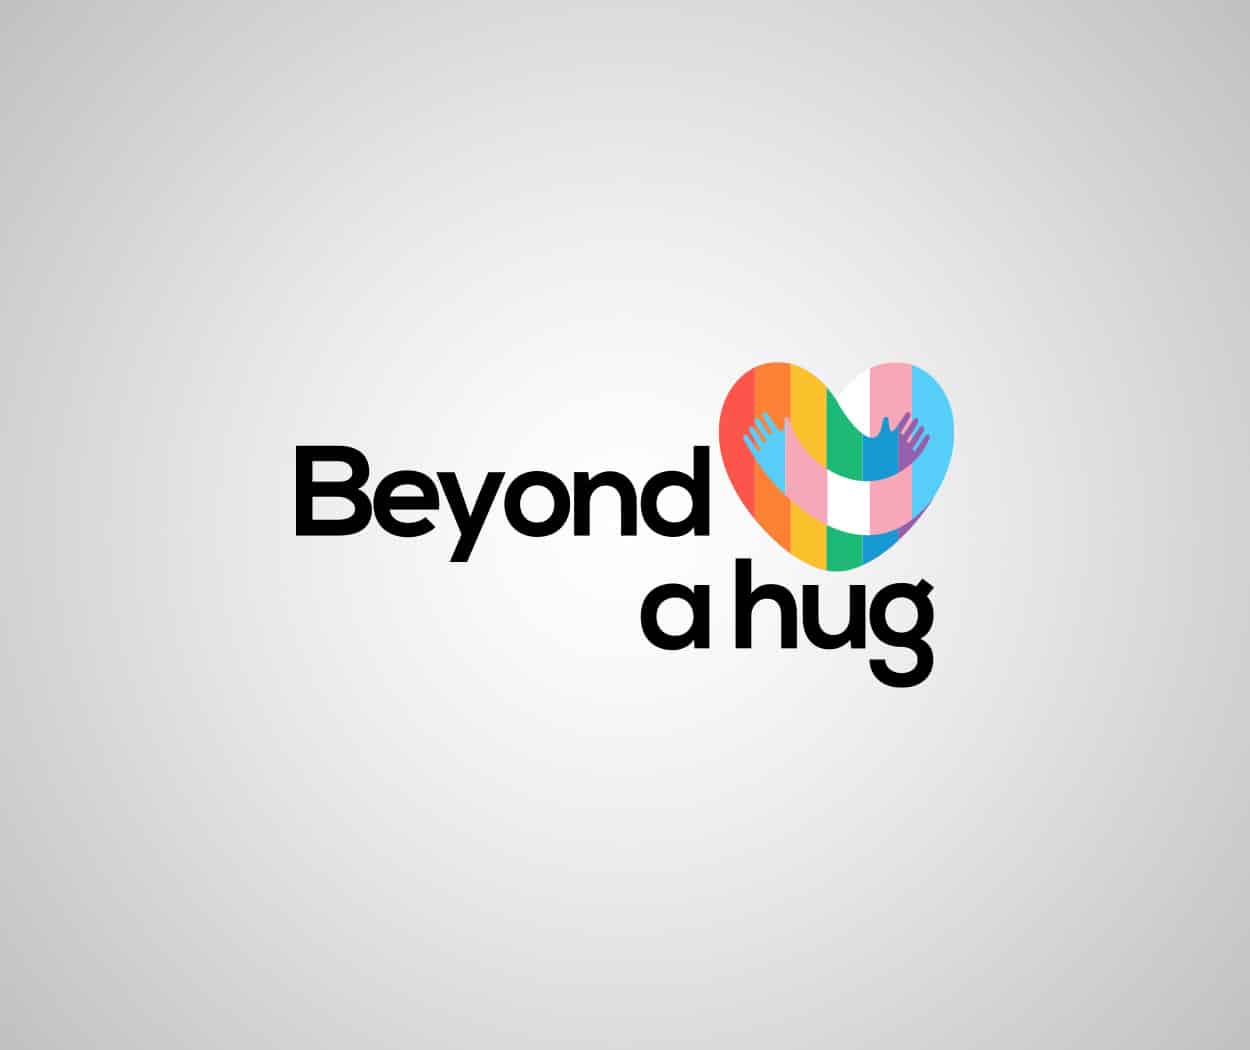 beyond-a-hug-branding-001